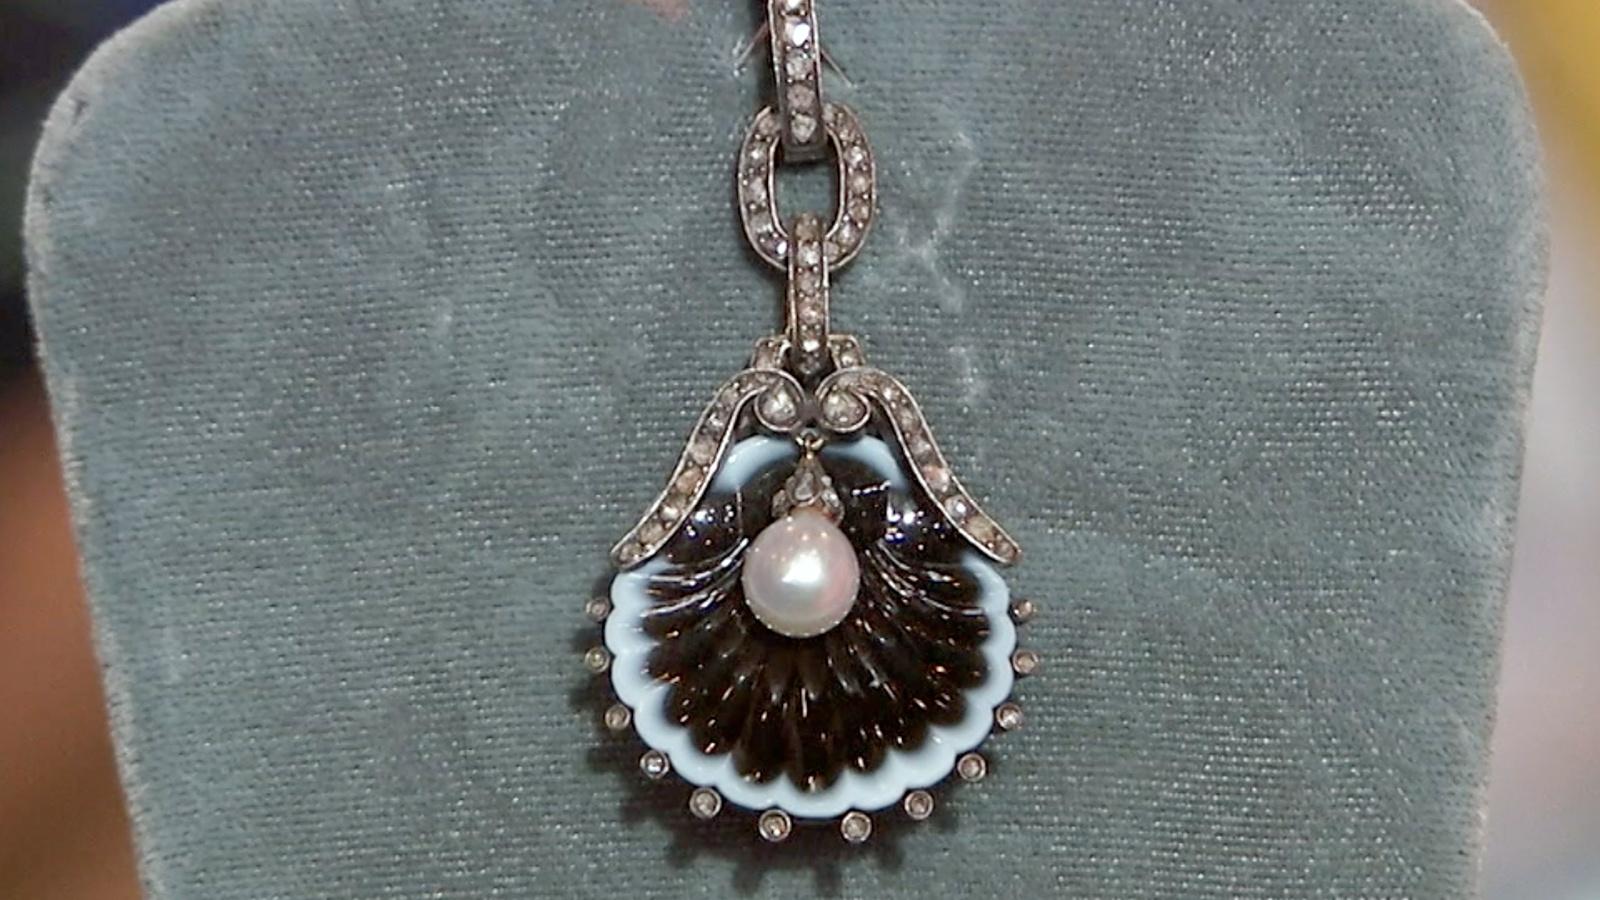 Louis C. Tiffany, Necklace, American